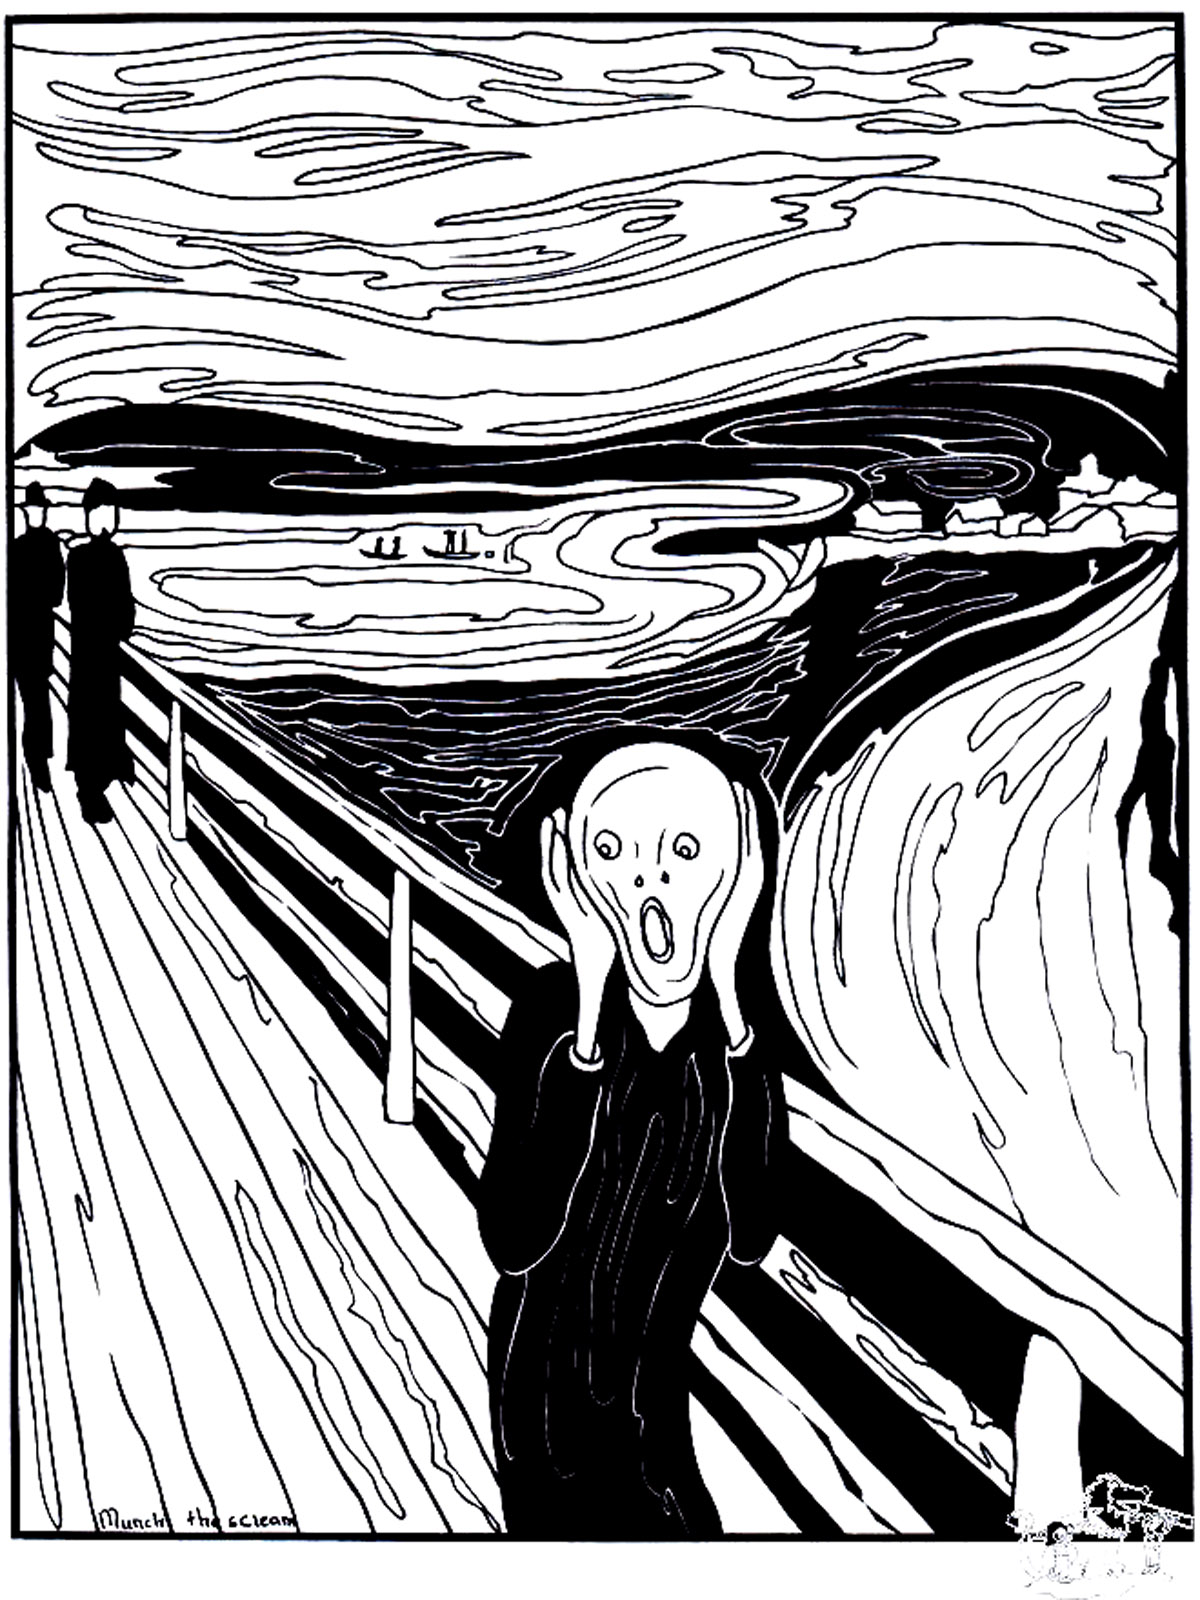 Coloriage créé à partir du tableau 'Le Cri' (1893) par Edvard Munch'. Le Cri' est un tableau emblématique qui représente le sentiment d'oppression et d'angoisse qui peut nous envahir parfois.Ce coloriage est une excellente façon de s'immerger dans l'œuvre d'art. Attention à ne pas trop vous imprégner de son ambiance mortifère ...